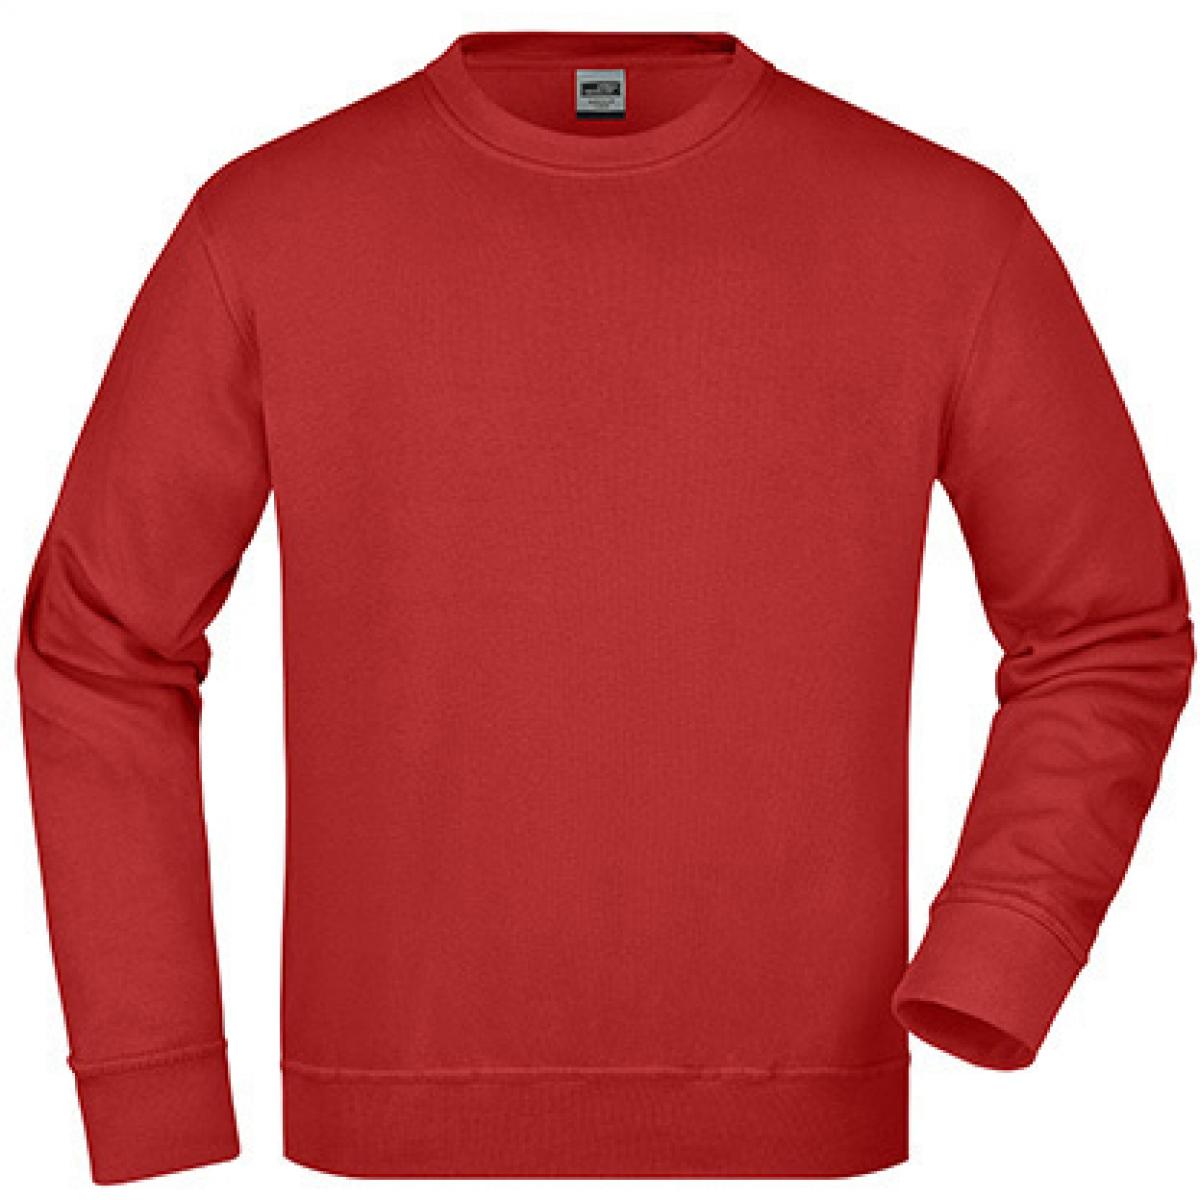 Hersteller: James+Nicholson Herstellernummer: JN840 Artikelbezeichnung: Workwear Sweatshirt / Waschbar bis 60C Farbe: Wine